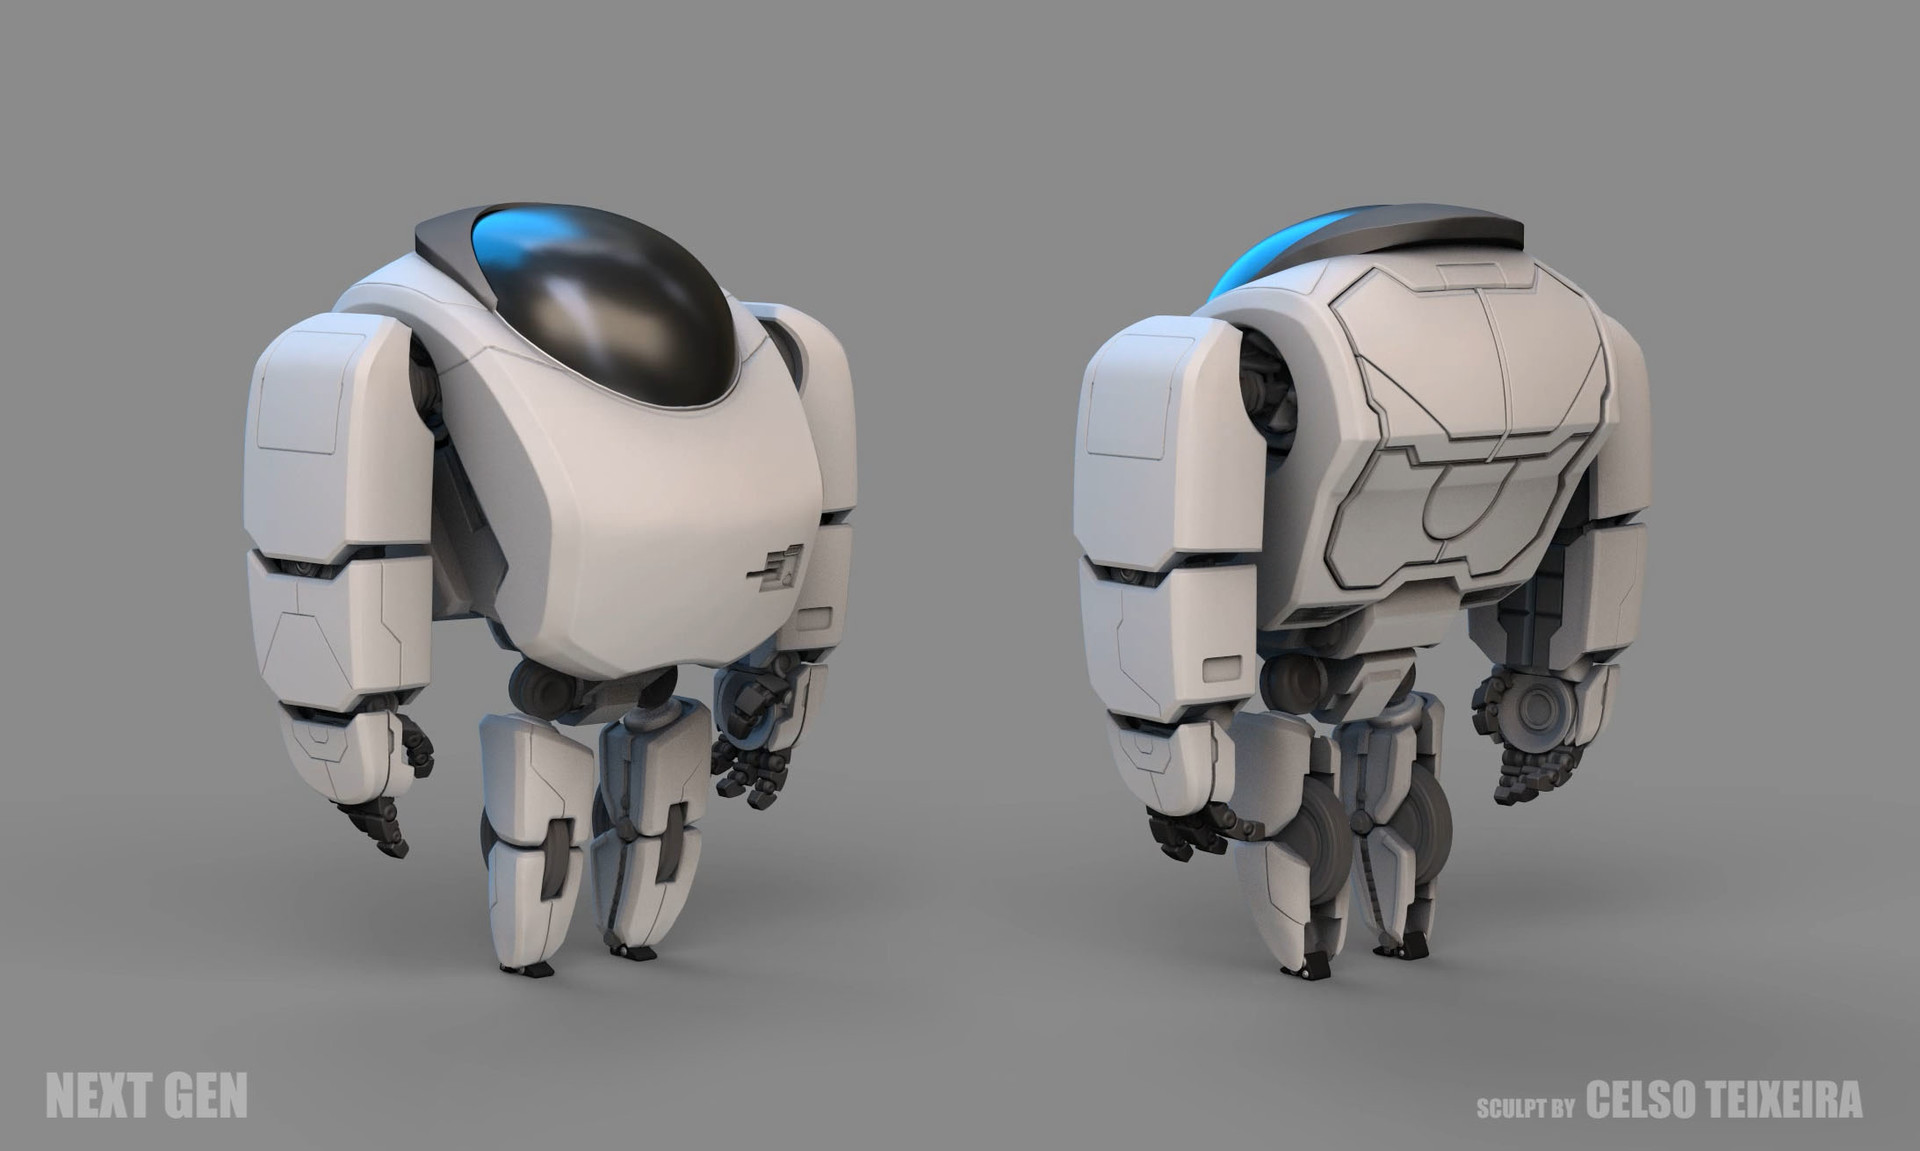 Next robot. Next Gen 7723. 7723 Робот. Next Gen робот Арес. Роботы 3 поколения.